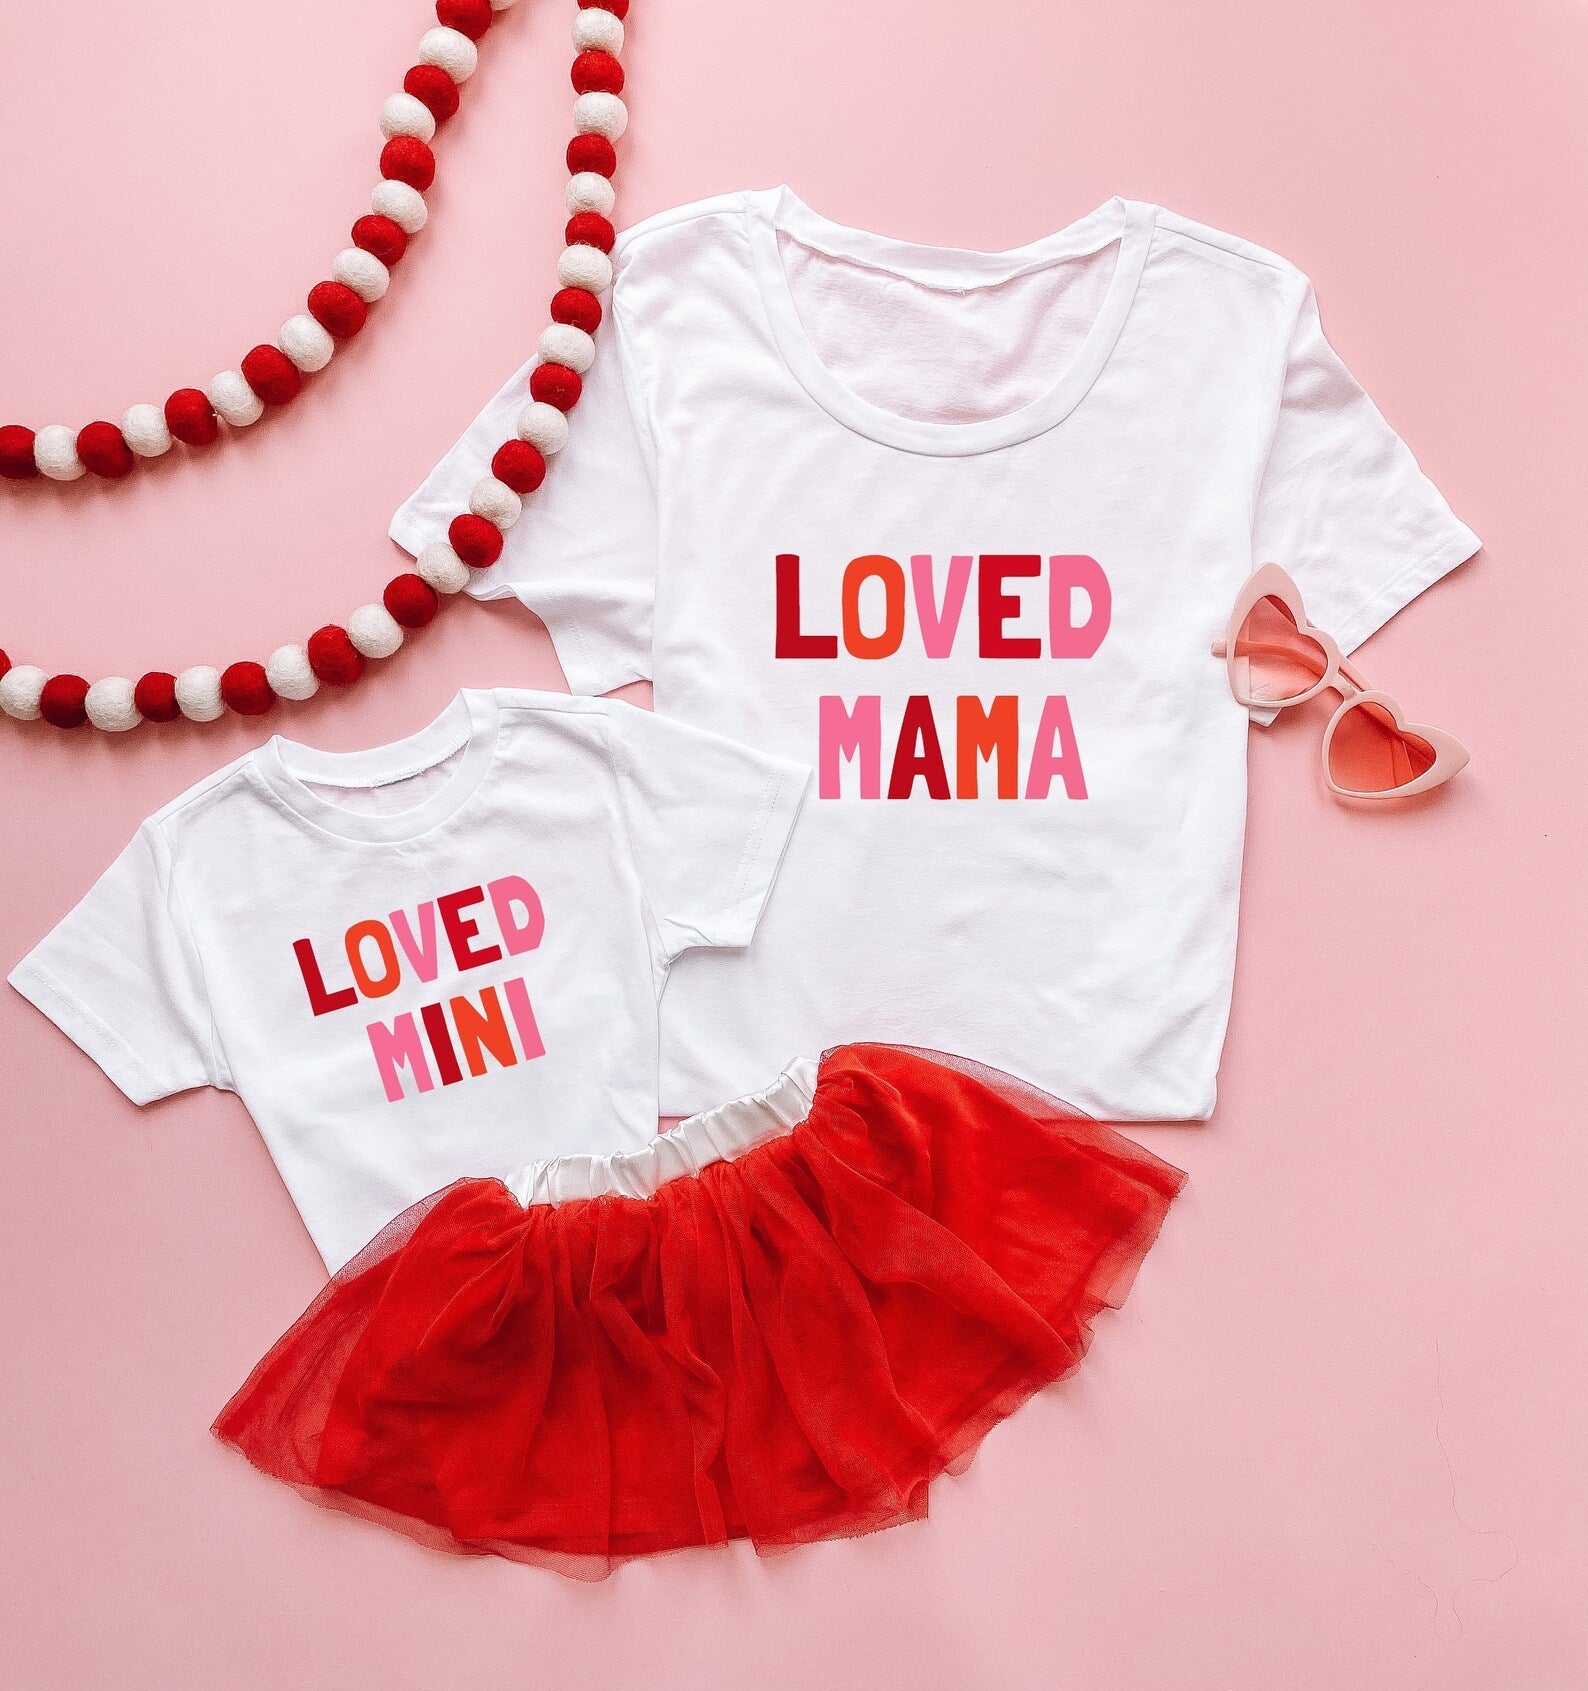 Loved Mama and Mini Matching Shirt - LITTLE MIA BELLA